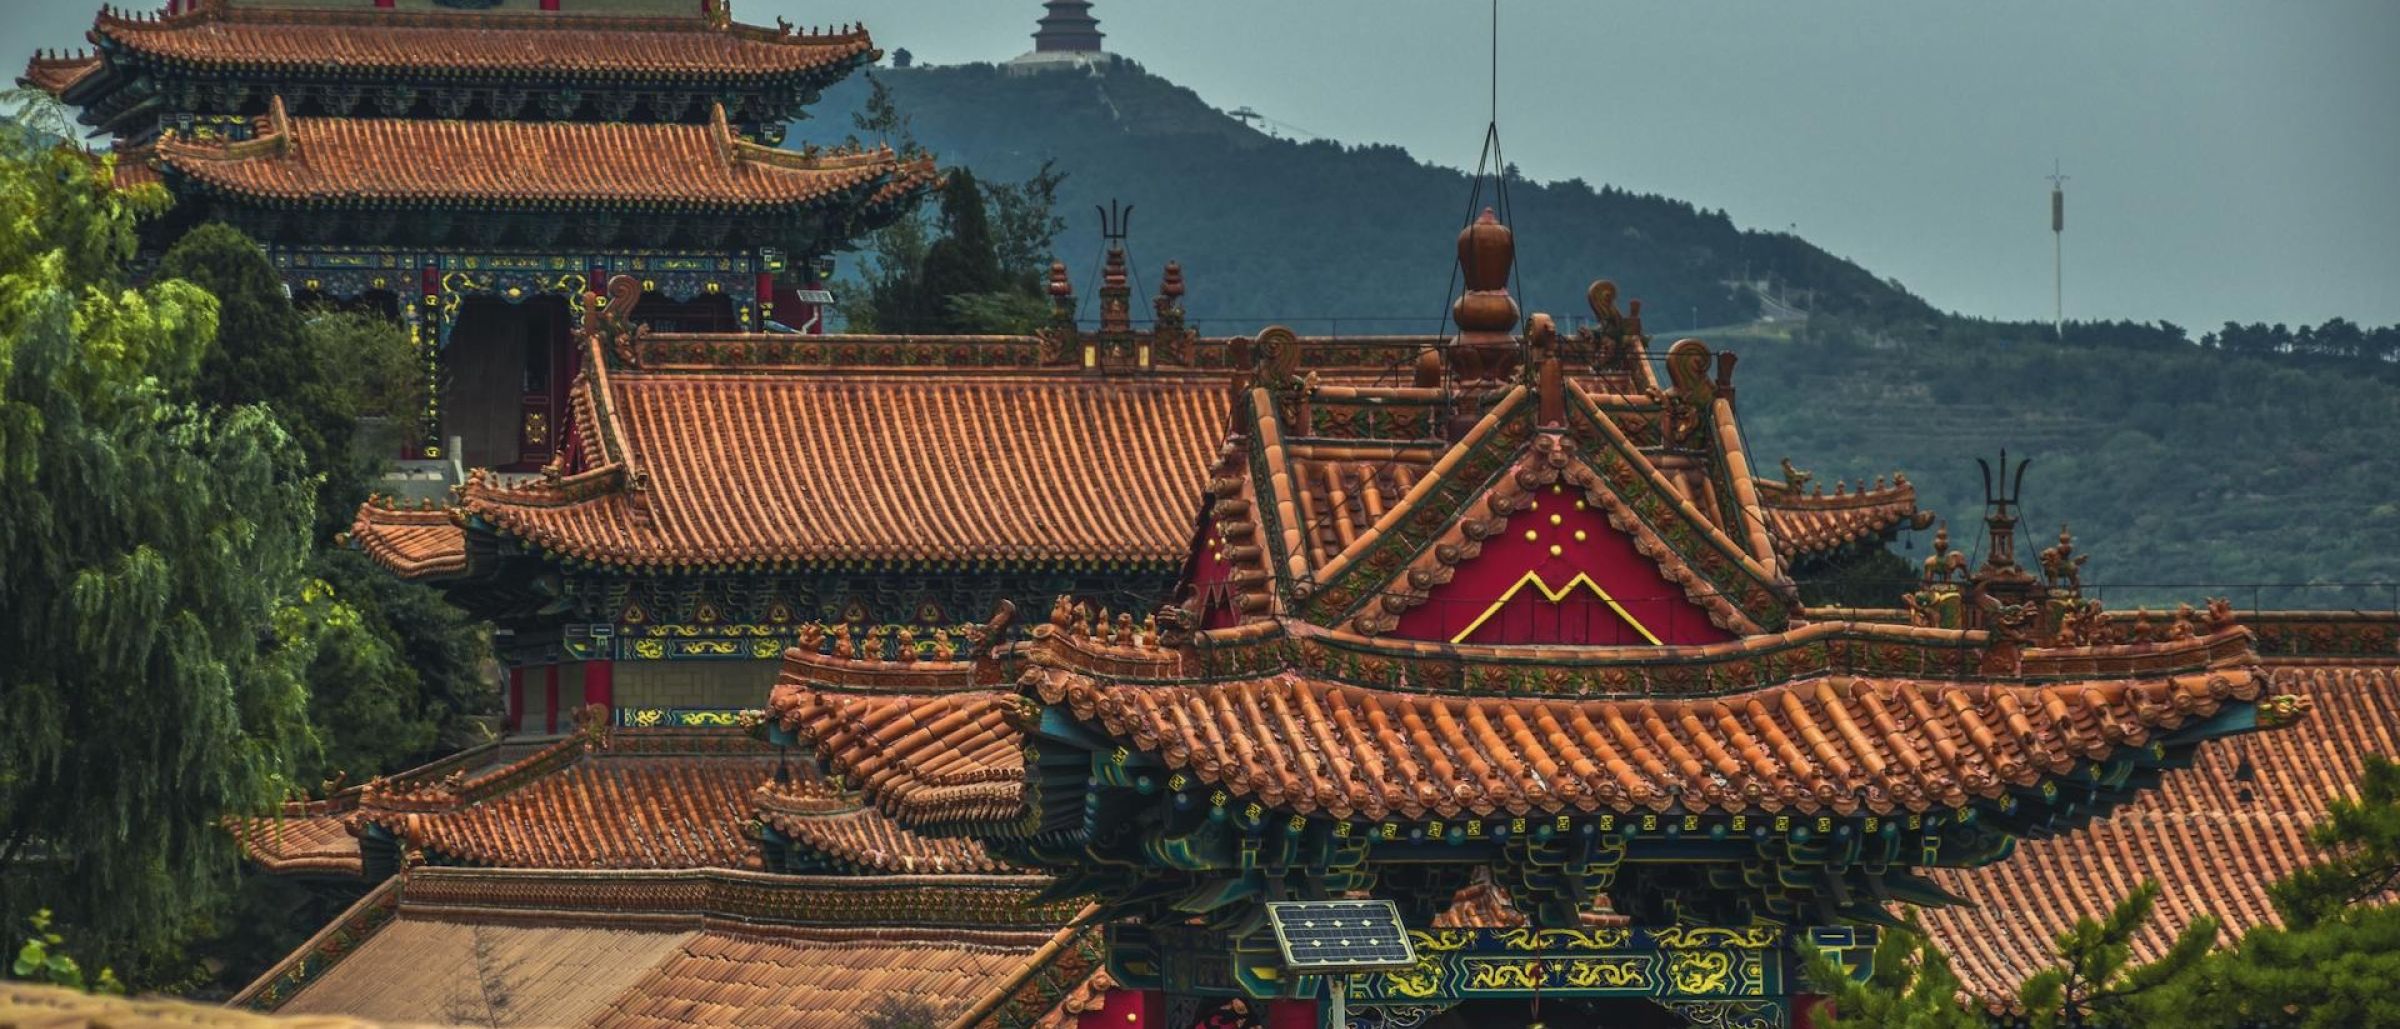 Traditionell-geschwungene Dächer chinesischer Gebäude